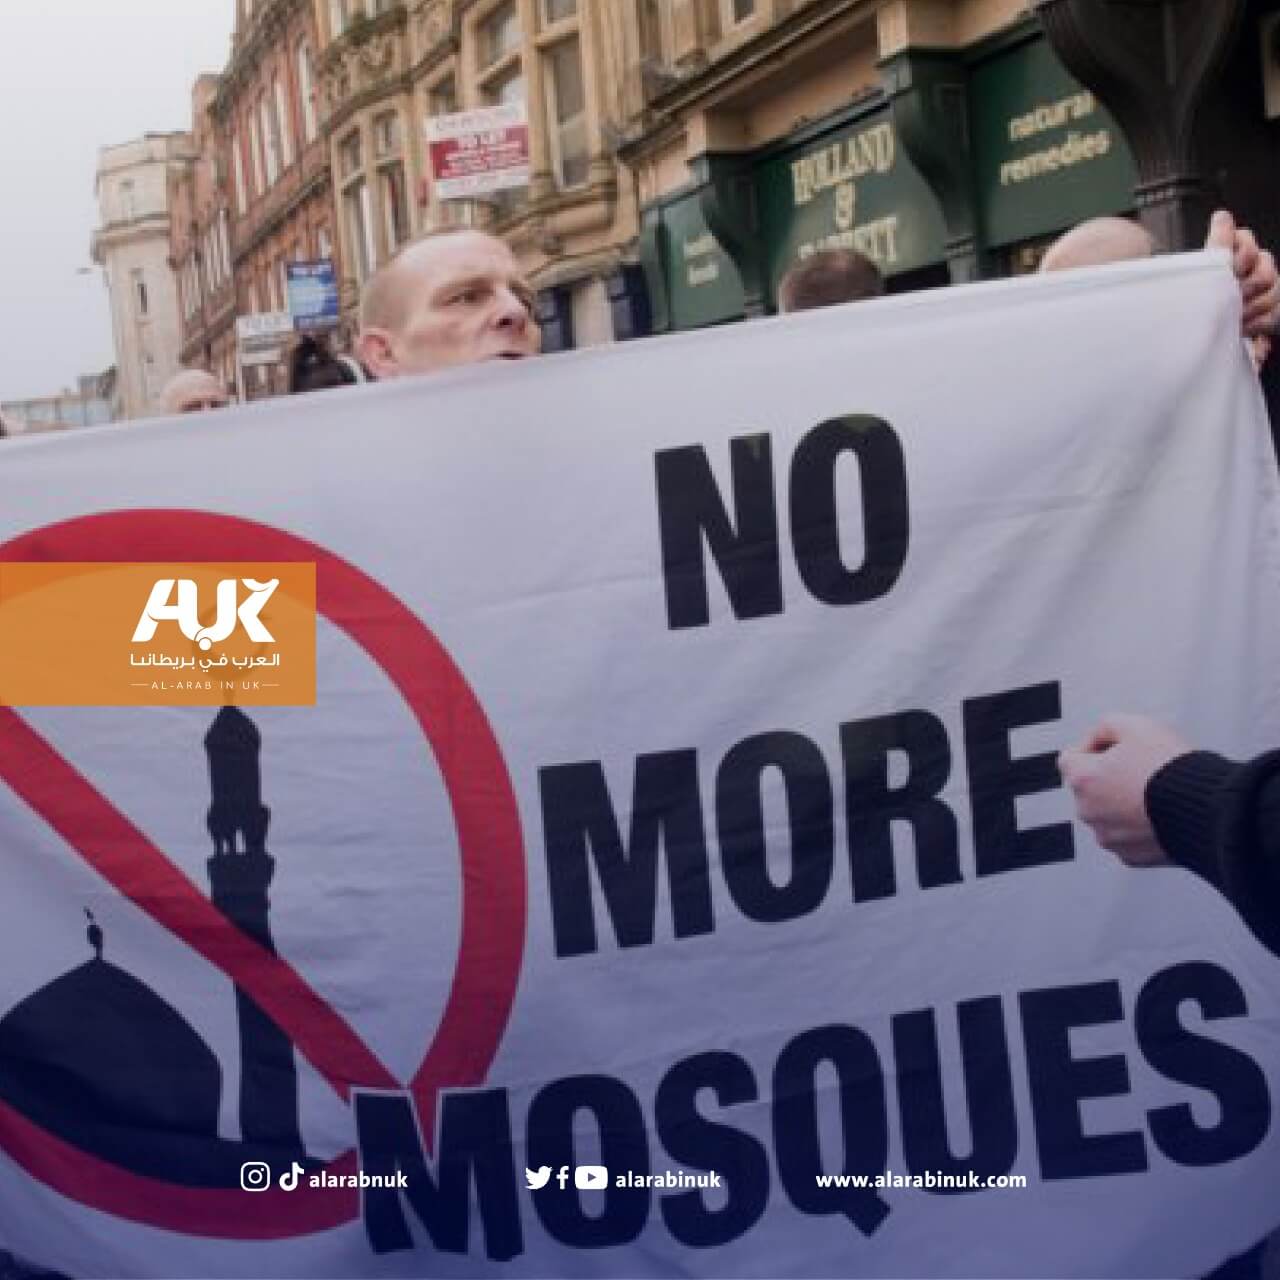 الهجمات العنصرية في بريطانيا طالت ثلث المساجد فيها خلال الأعوام الثلاثة الأخيرة!